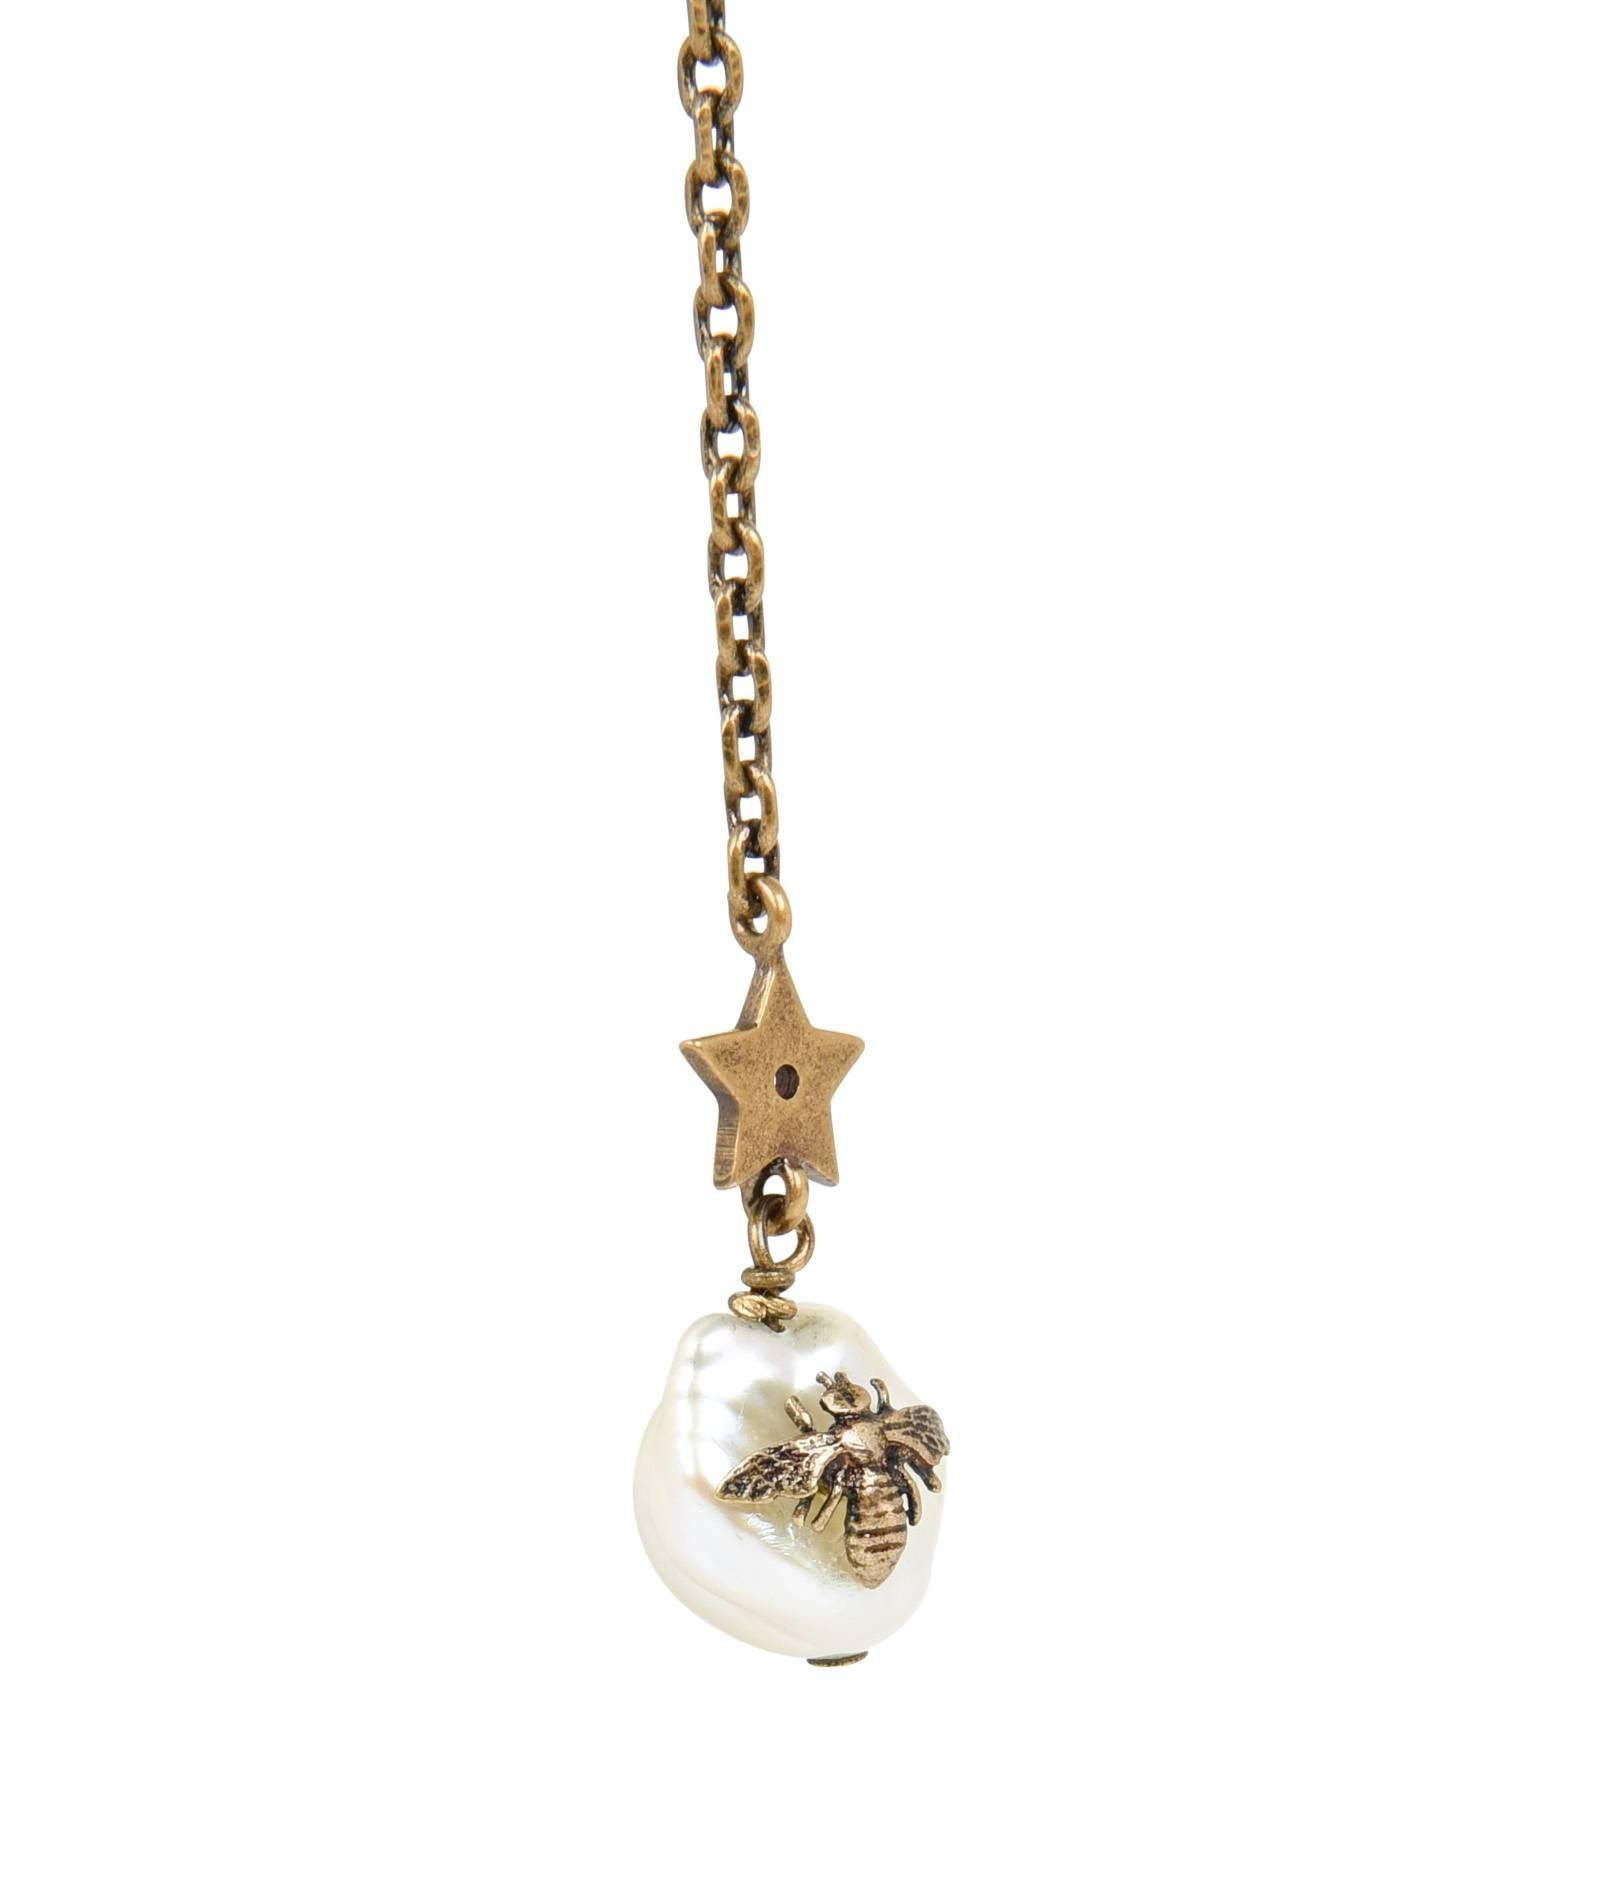 Mightychic propose un collier lariat Y Christian Dior en or vieilli.
Perles d'eau douce intercalées d'étoiles et du logo CD en or vieilli.
La dernière perle du lasso est ornée d'une abeille en or vieilli.  
Breloque CD en métal embossé avec logo à